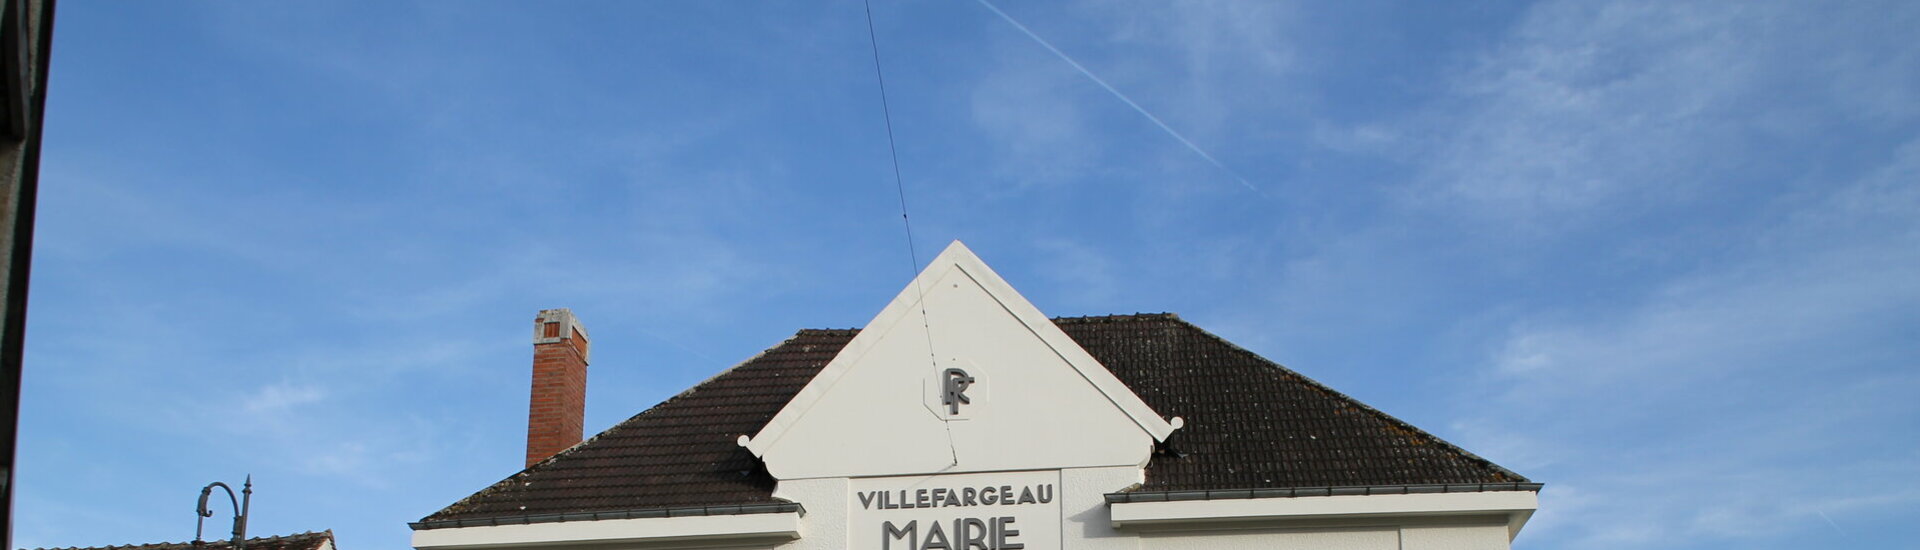 Le Conseil Municipal de Villefargeau